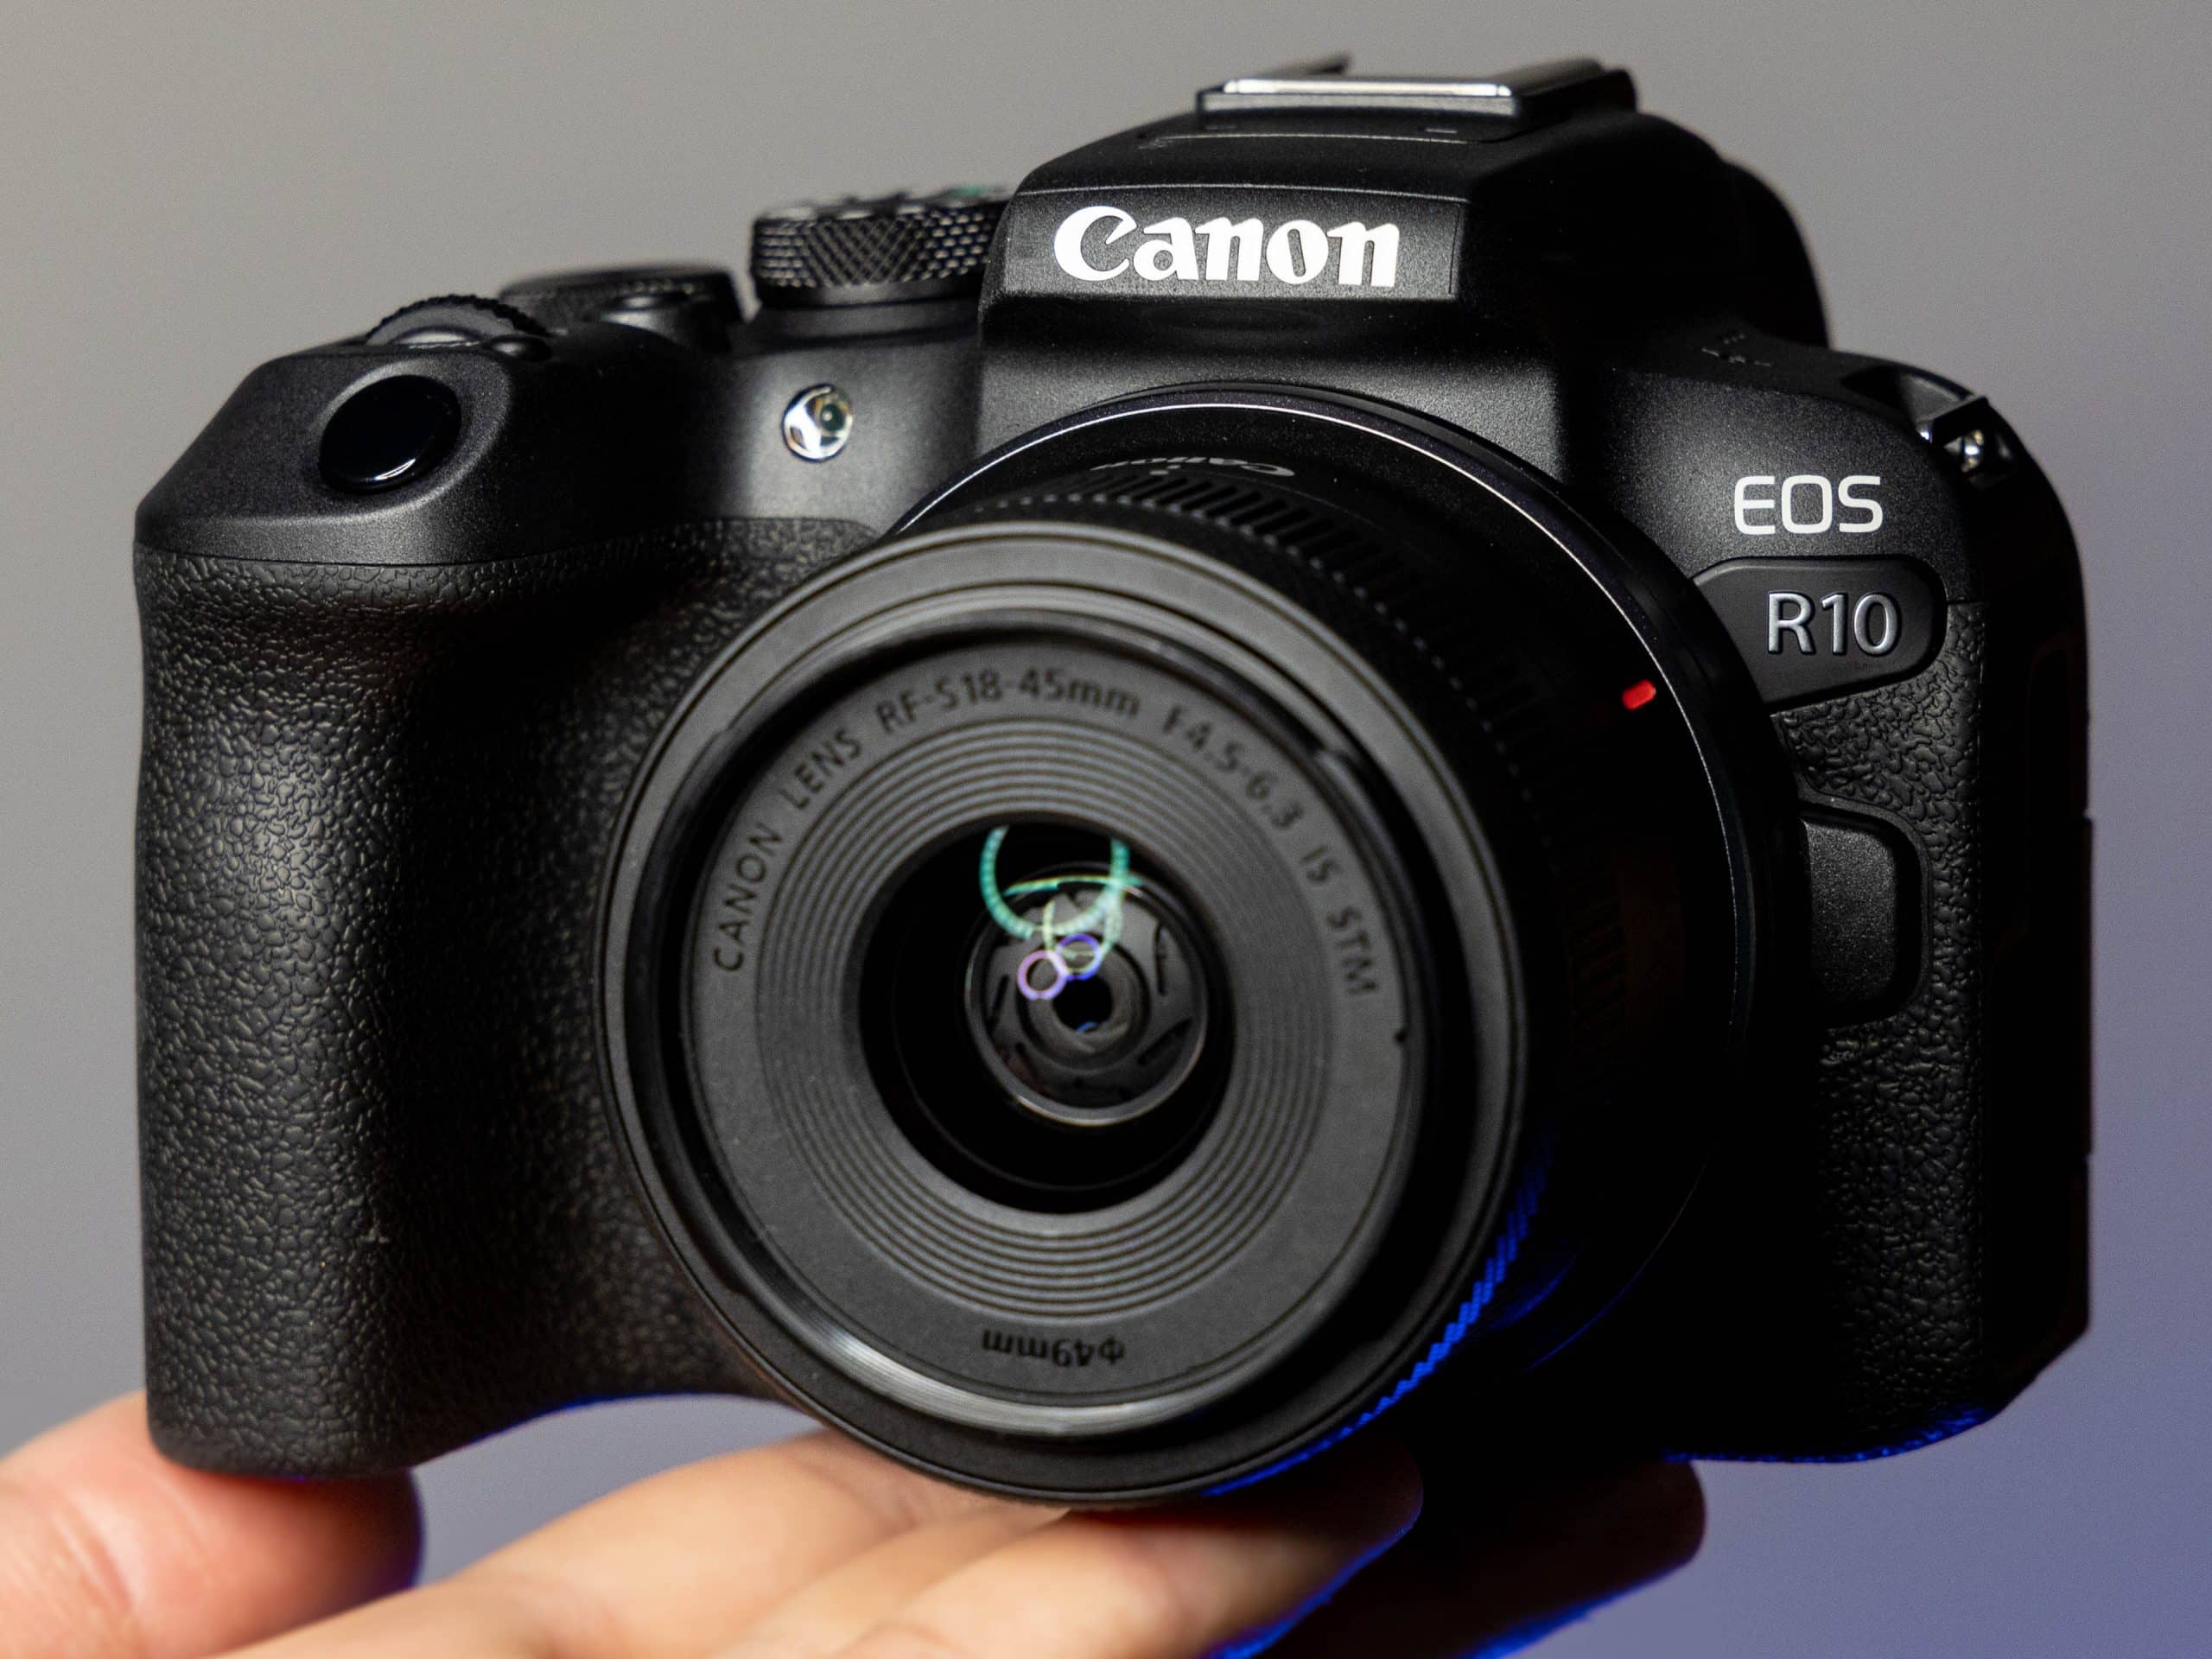 Canon ra mắt máy ảnh EOS R10 tại Việt Nam với cảm biến APS-C 24MP, giá từ 35.2 triệu đồng